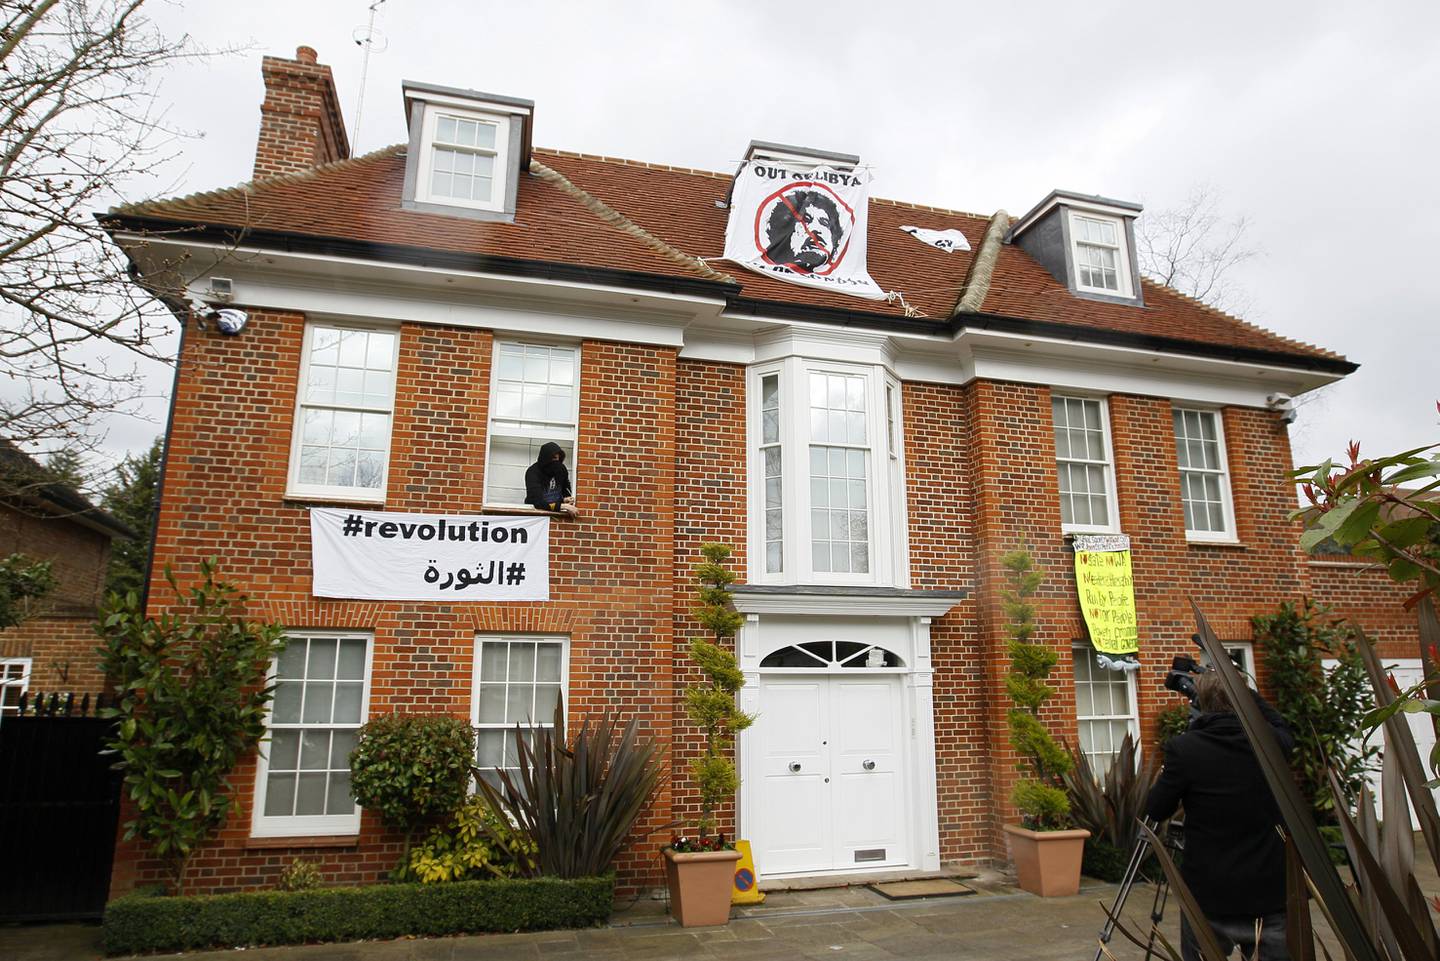 Aktivister okkuperte i 2011 et hus som skal ha tilhørt Saif al-Islam i London.